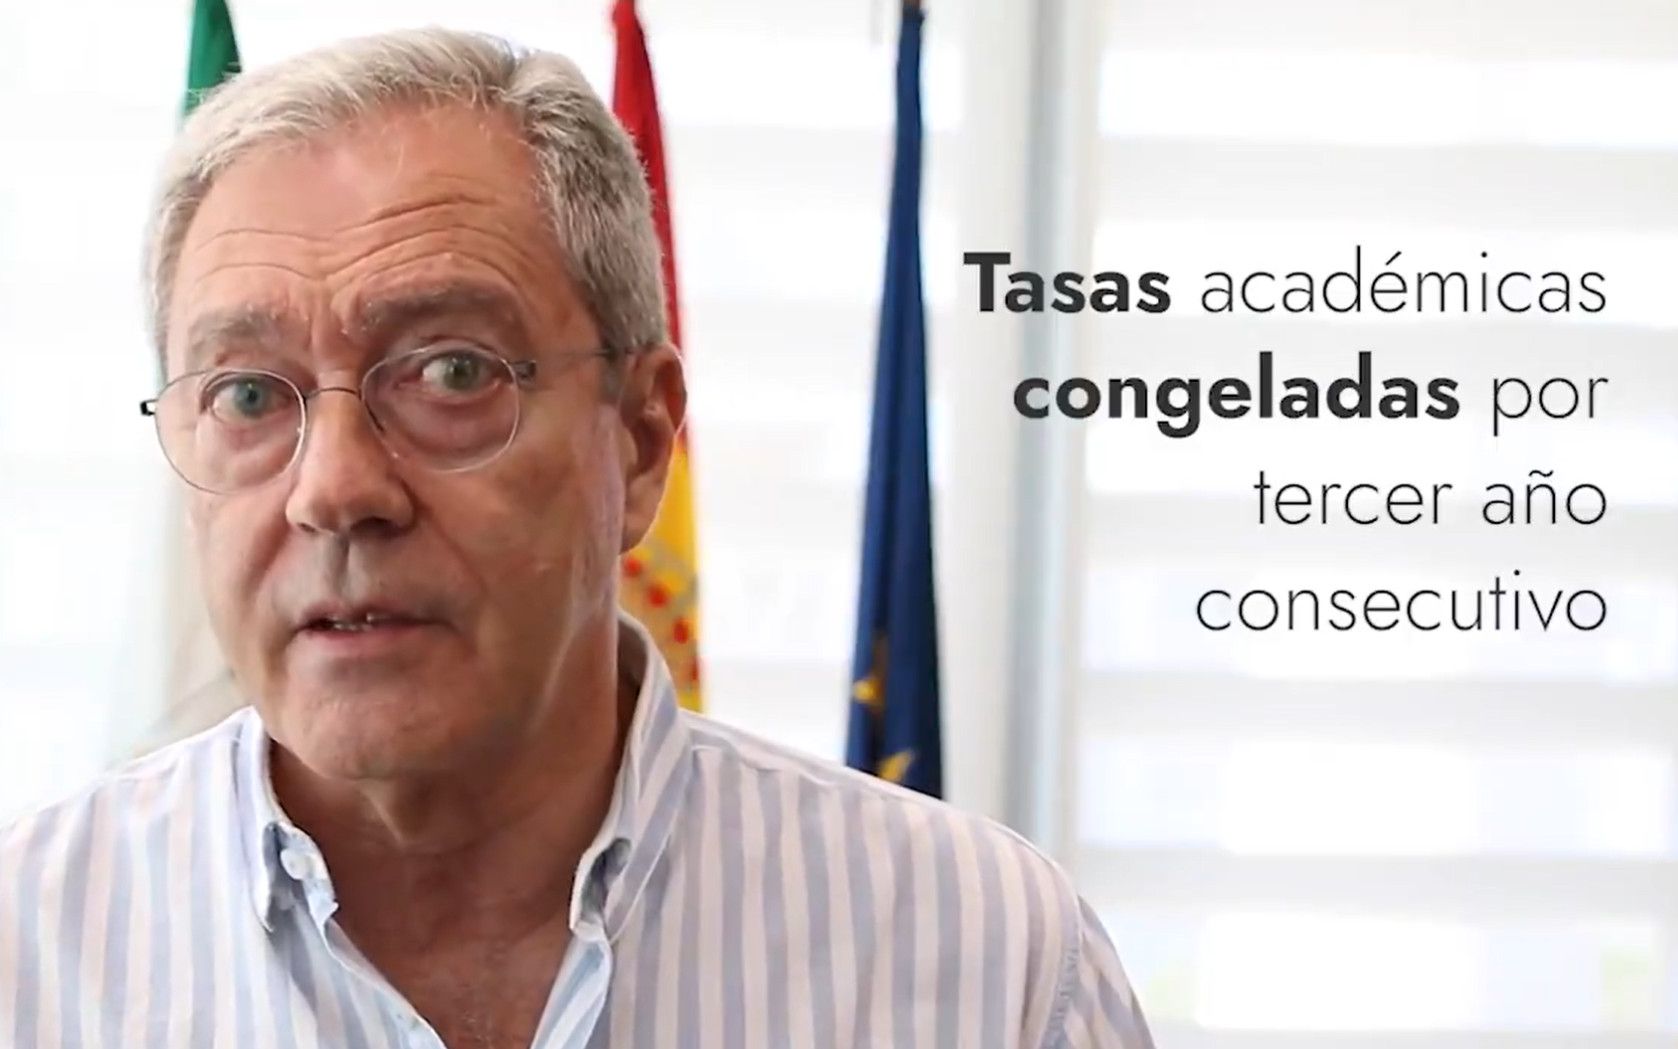 Rogelio Velasco, en el vídeo en el que presume de las medidas sobre la universidad.